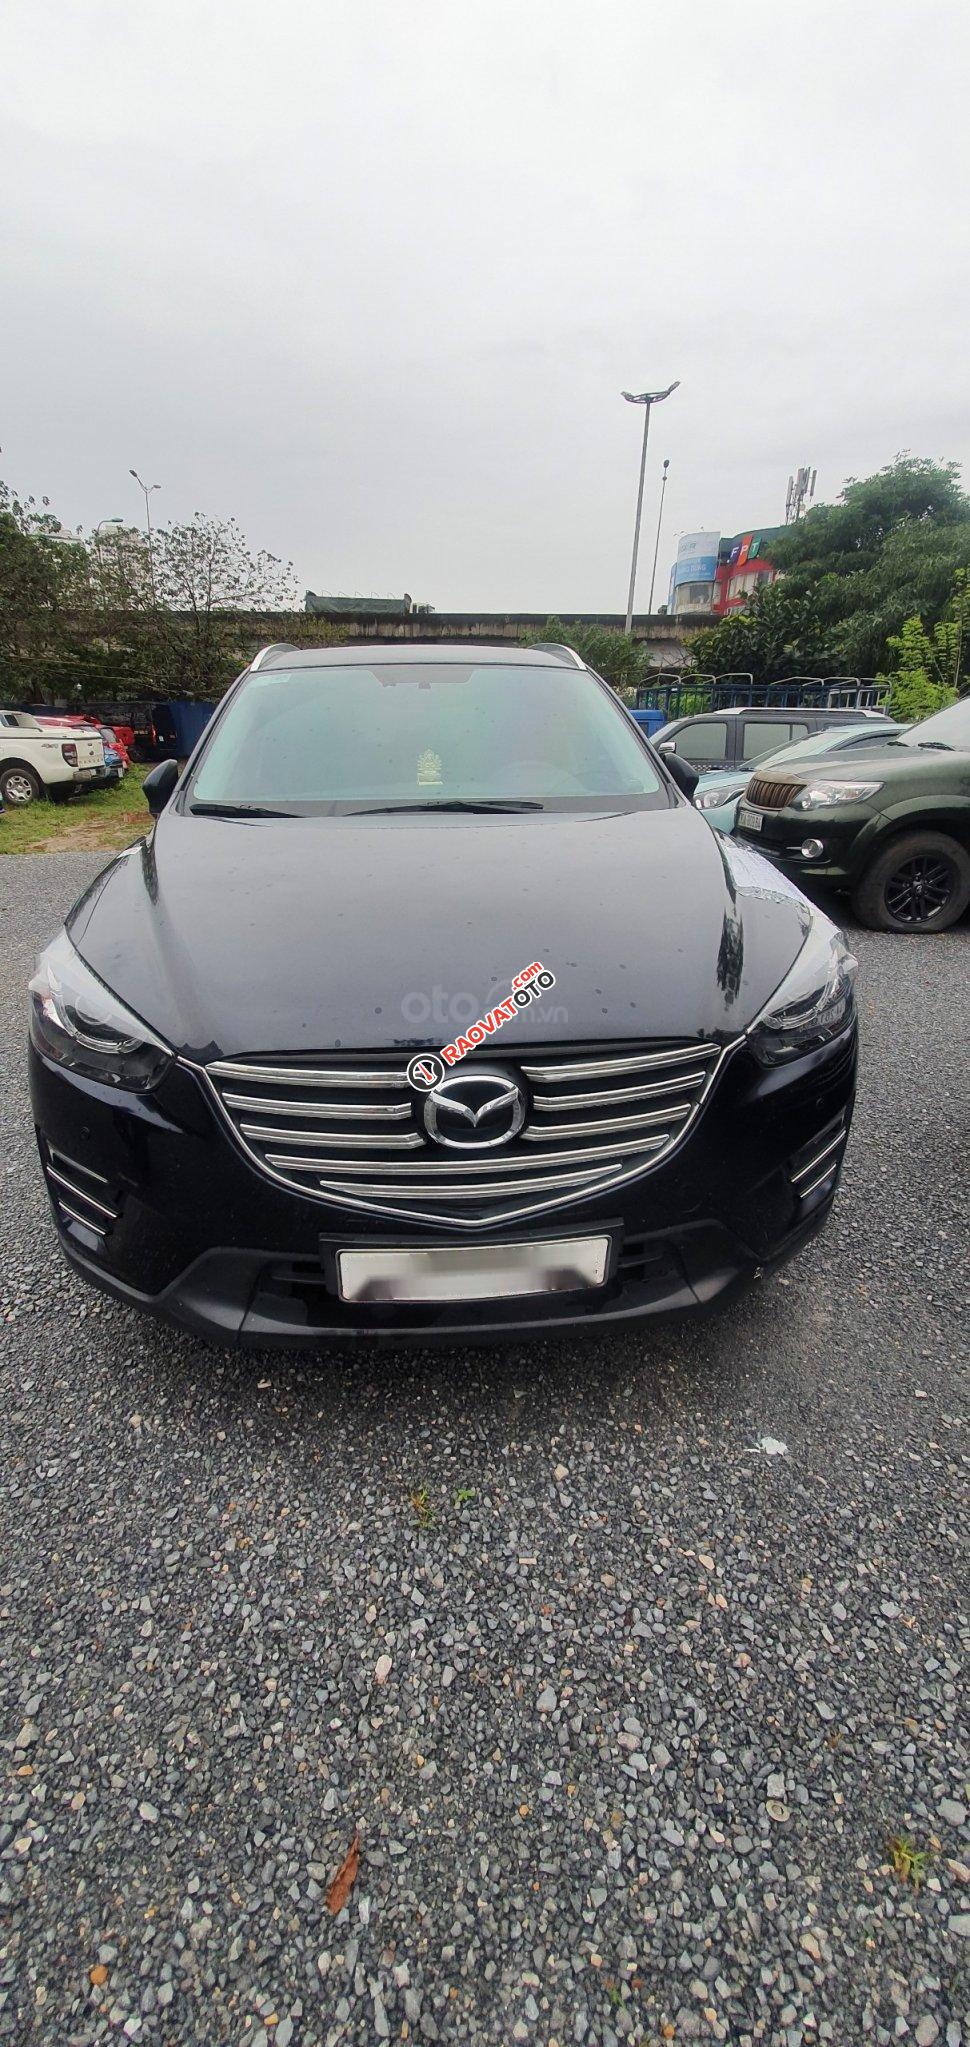 Ngân hàng bán đấu giá chiếc Mazda CX 5 năm sản xuất 2017, màu đen-2